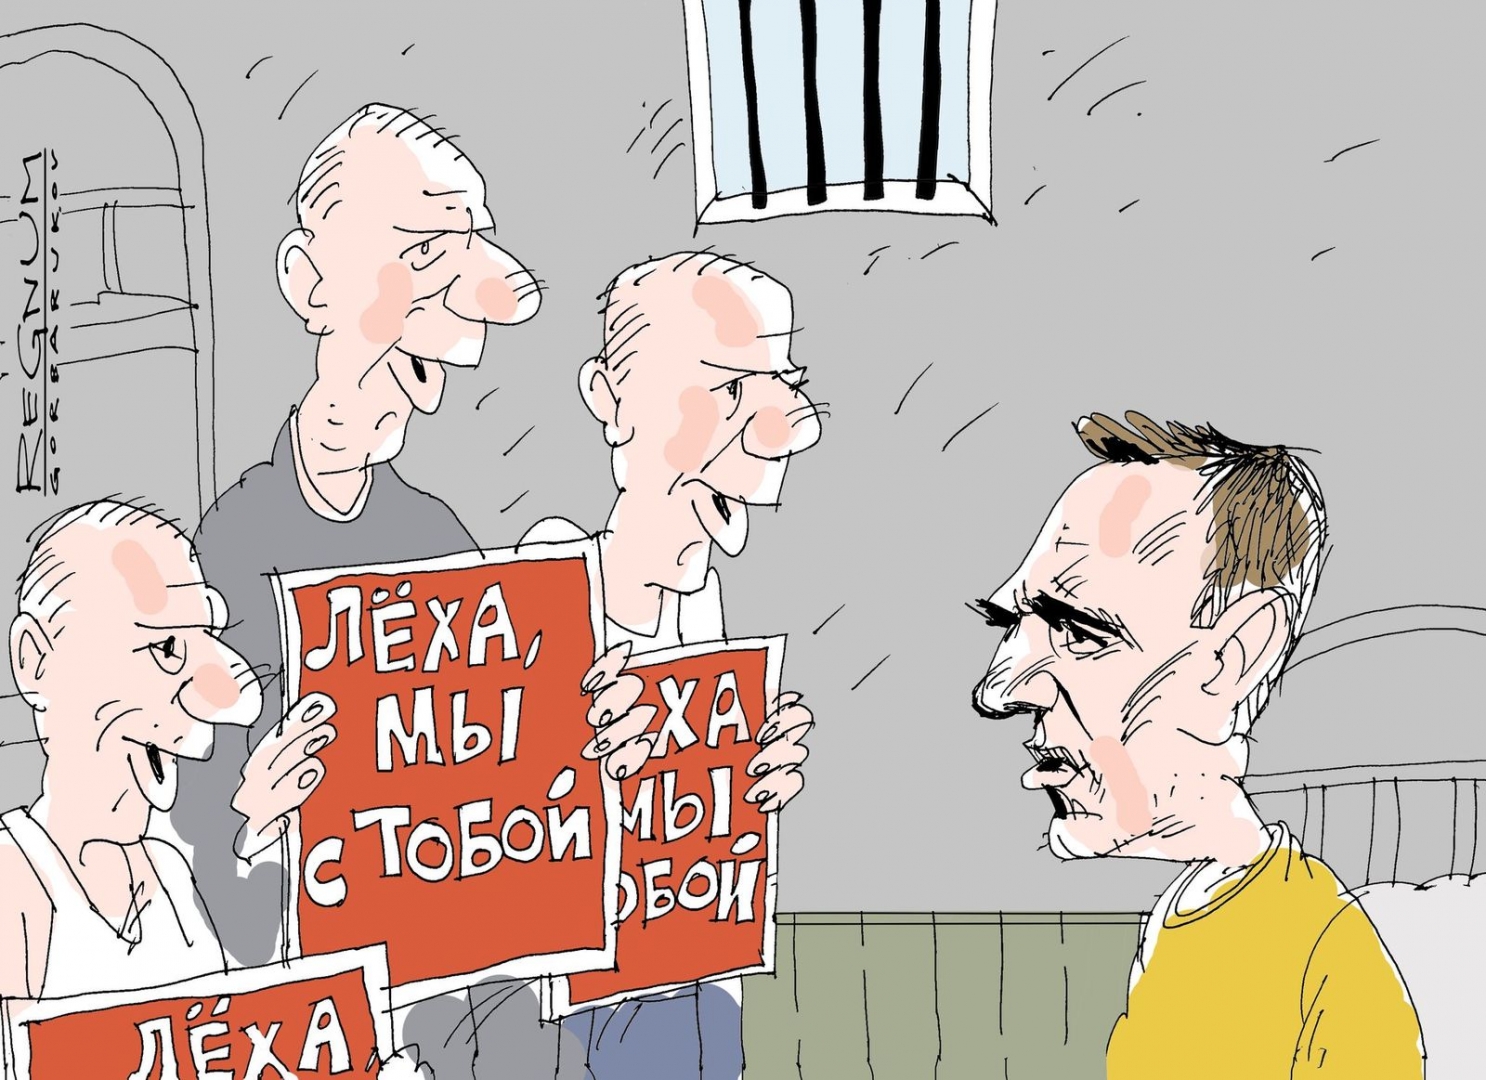 МИД РФ пообещал США серьёзный разговор в связи с шумихой вокруг Навального